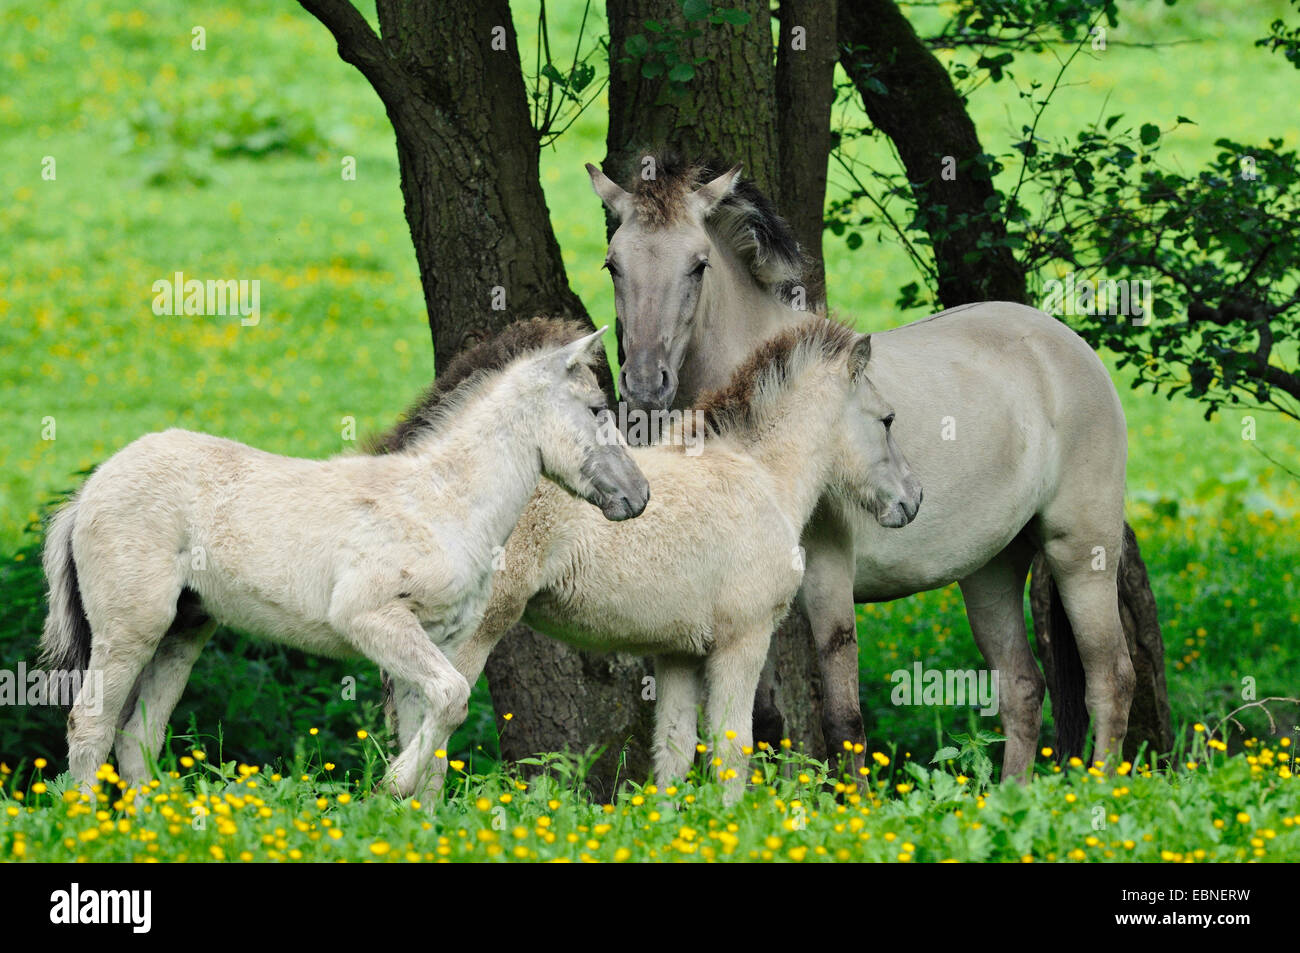 Tarpan (Equus Ferus Gmelini, Equus Gmelini), zurück durch die Kreuzung von verschiedenen Pferderassen Zucht Versuch der ausgestorbenen Wildpferd Unterarten. Stute mit zwei Fohlen auf der Weide, Deutschland Stockfoto